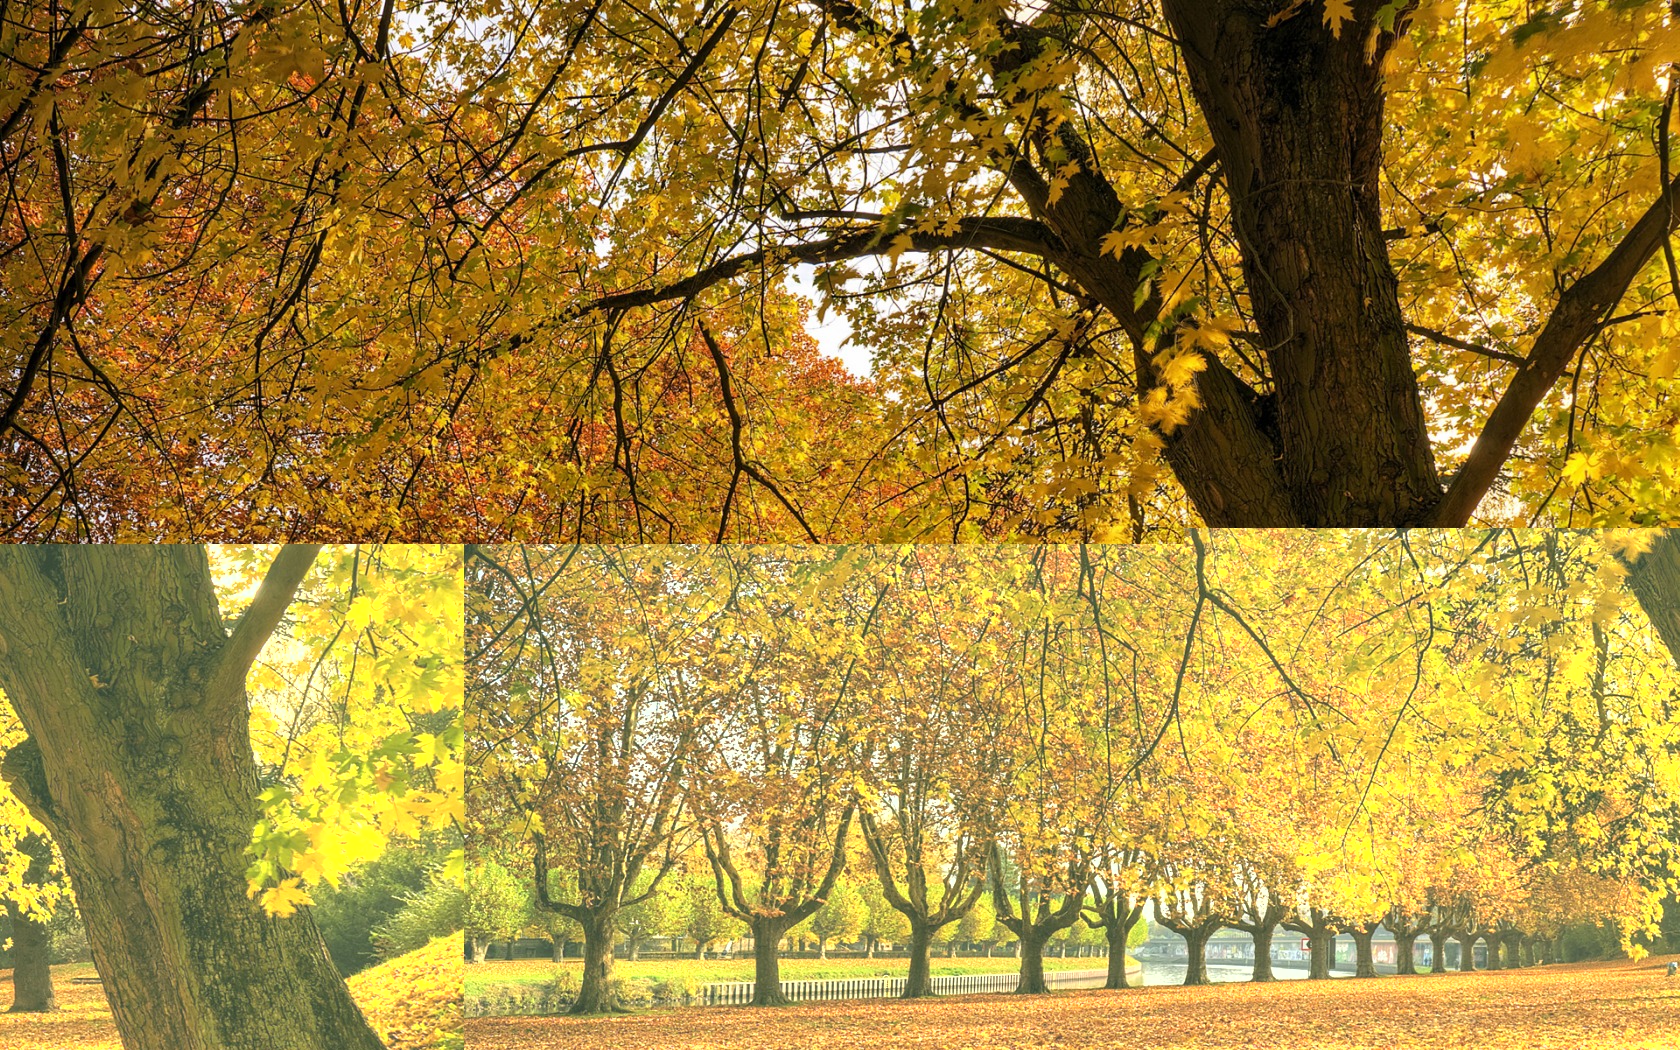 Golden Autumn Wallpaper Autumn Nature Wallpaper in jpg format